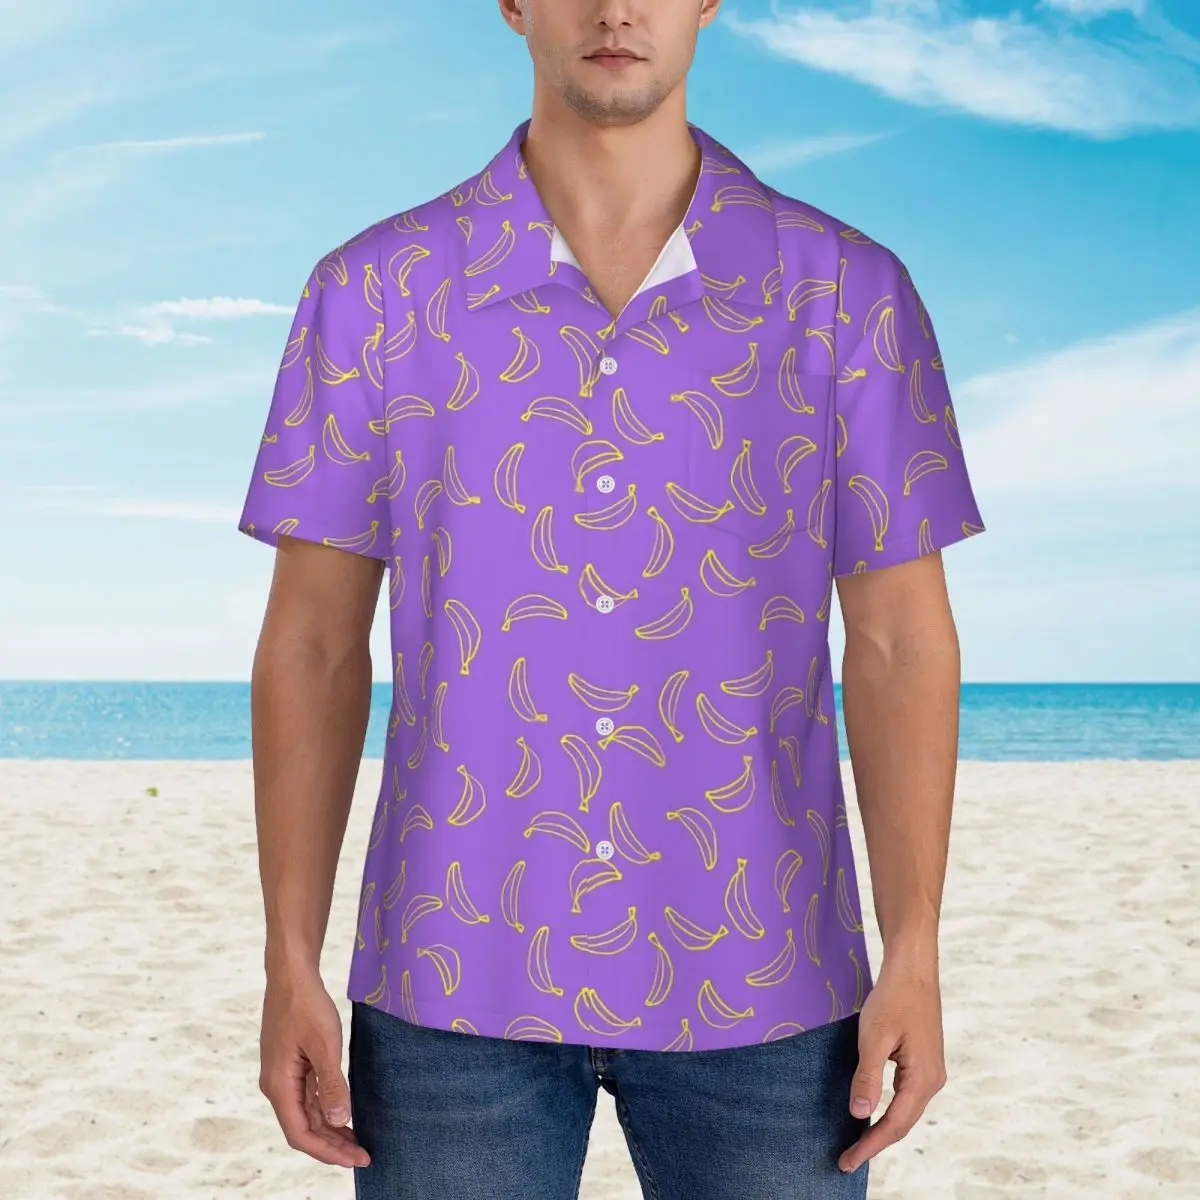 

Hawaii Shirt Vacation Colorful Banana Blouses Abstract Print Cool Casual Shirts Mens Short-Sleeved Comfortable Tops